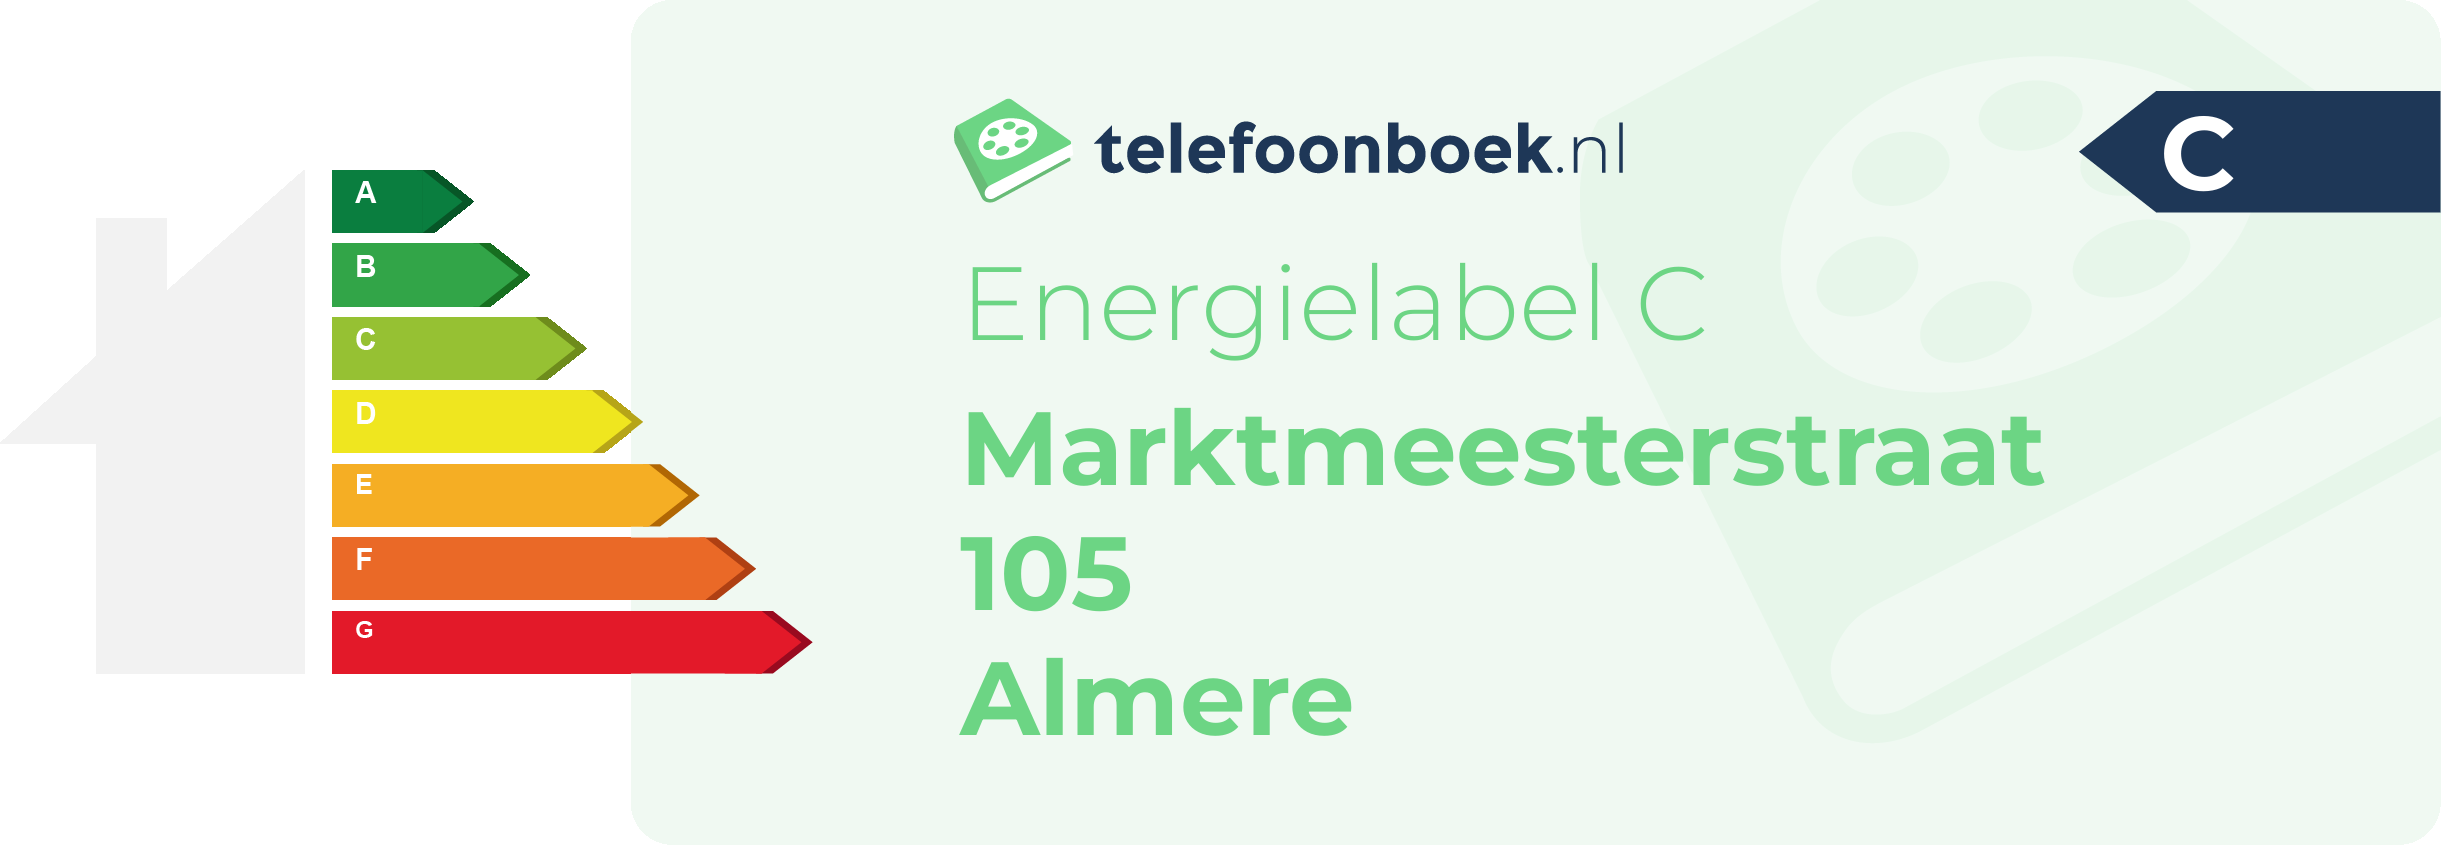 Energielabel Marktmeesterstraat 105 Almere